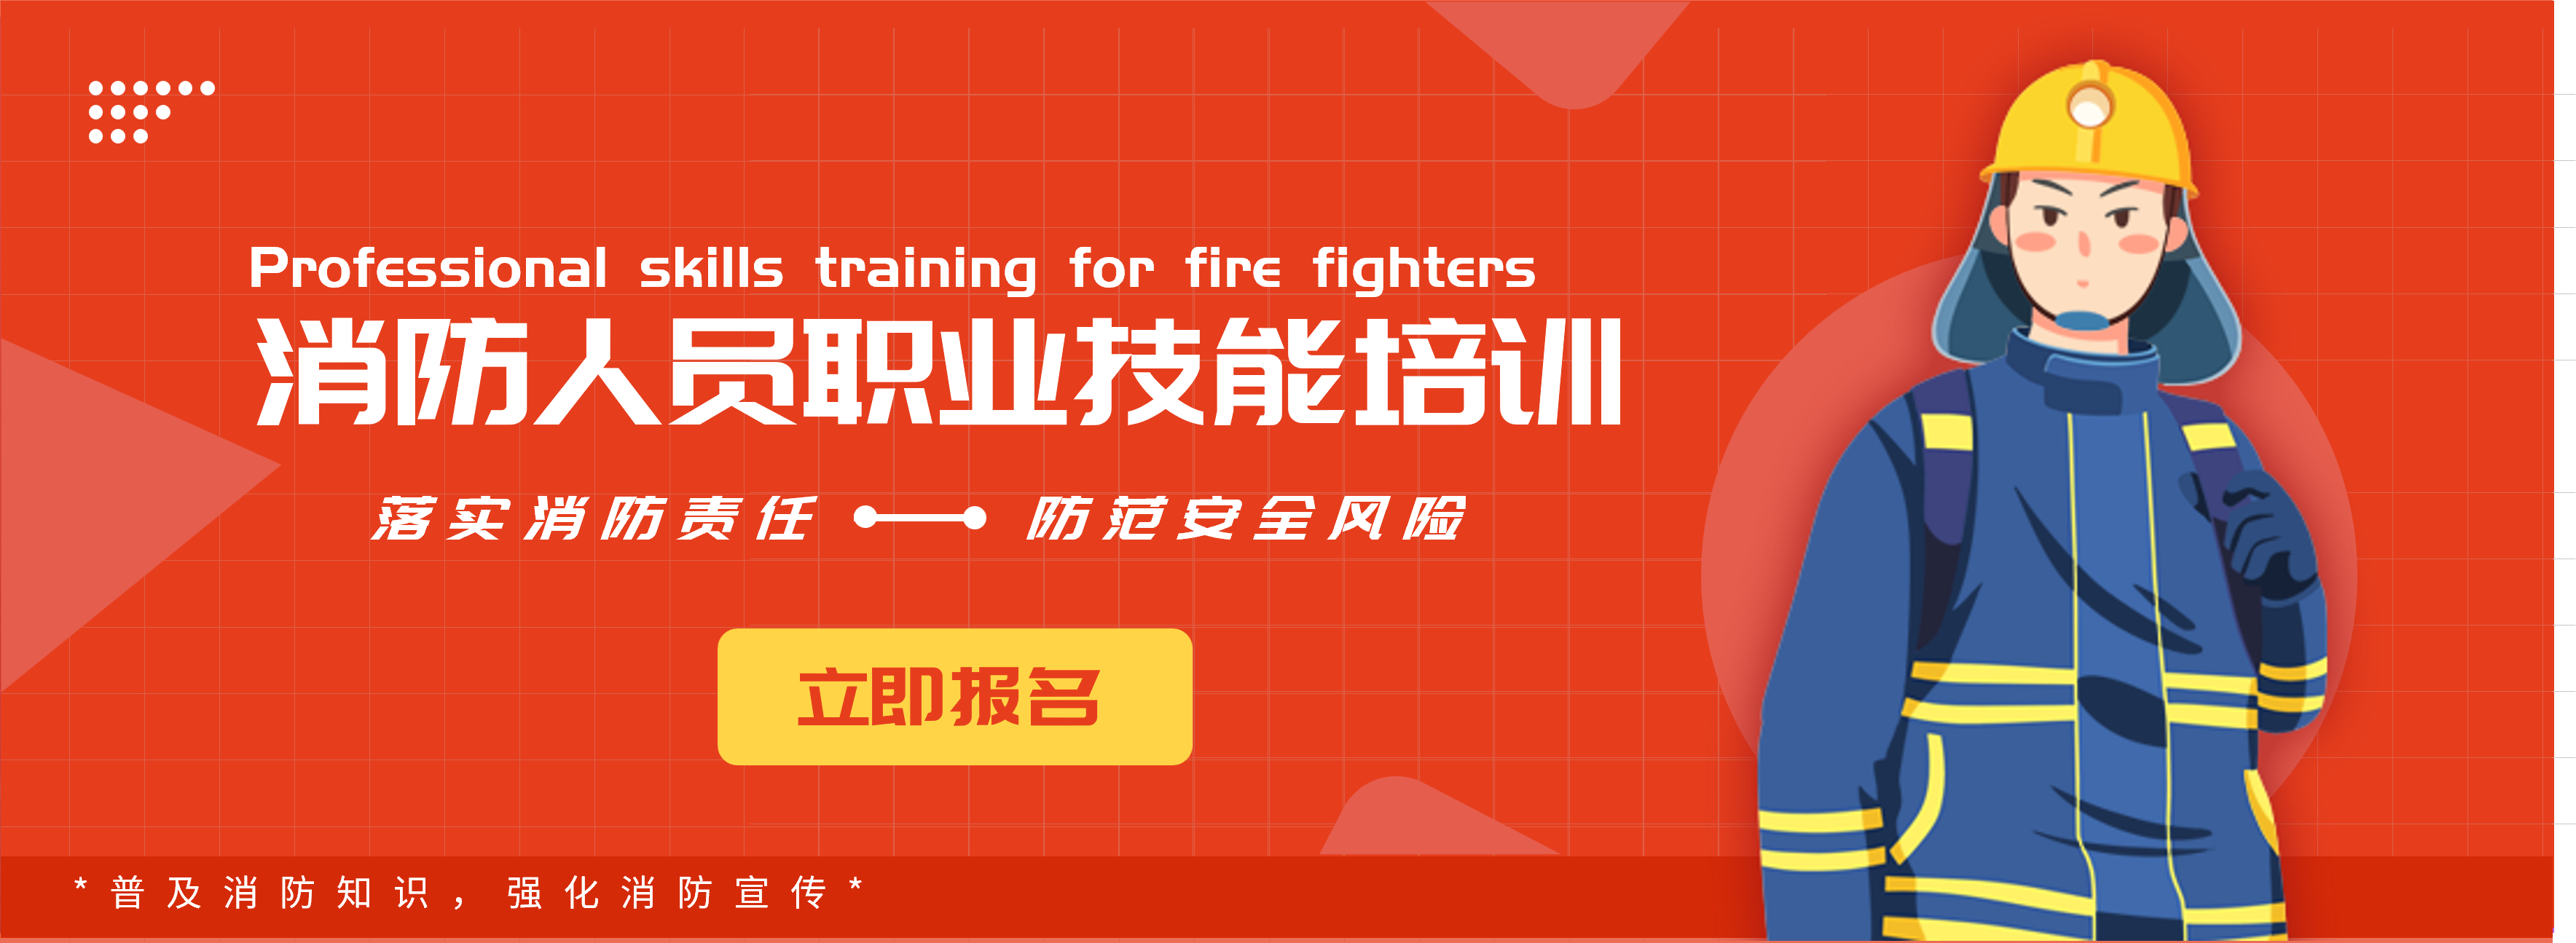 消防安全知识培训